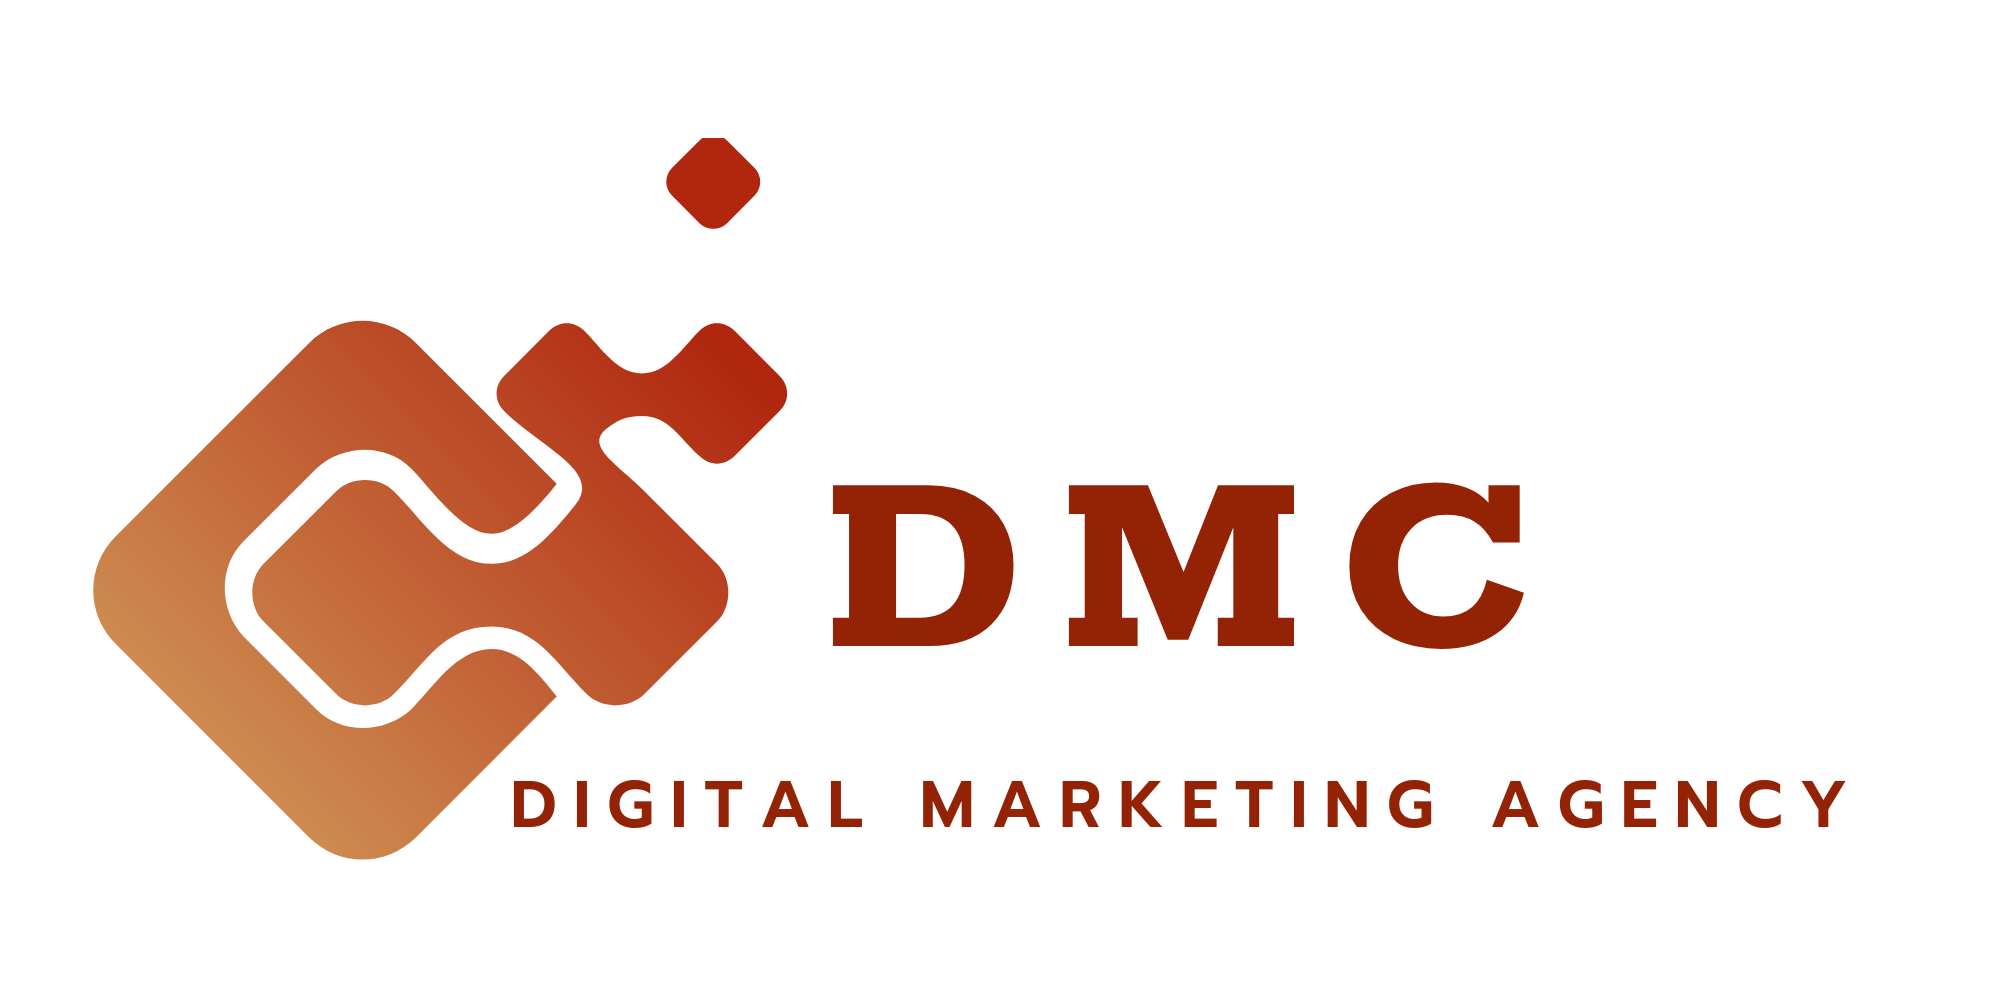 DMC-Digital Marketing Agency